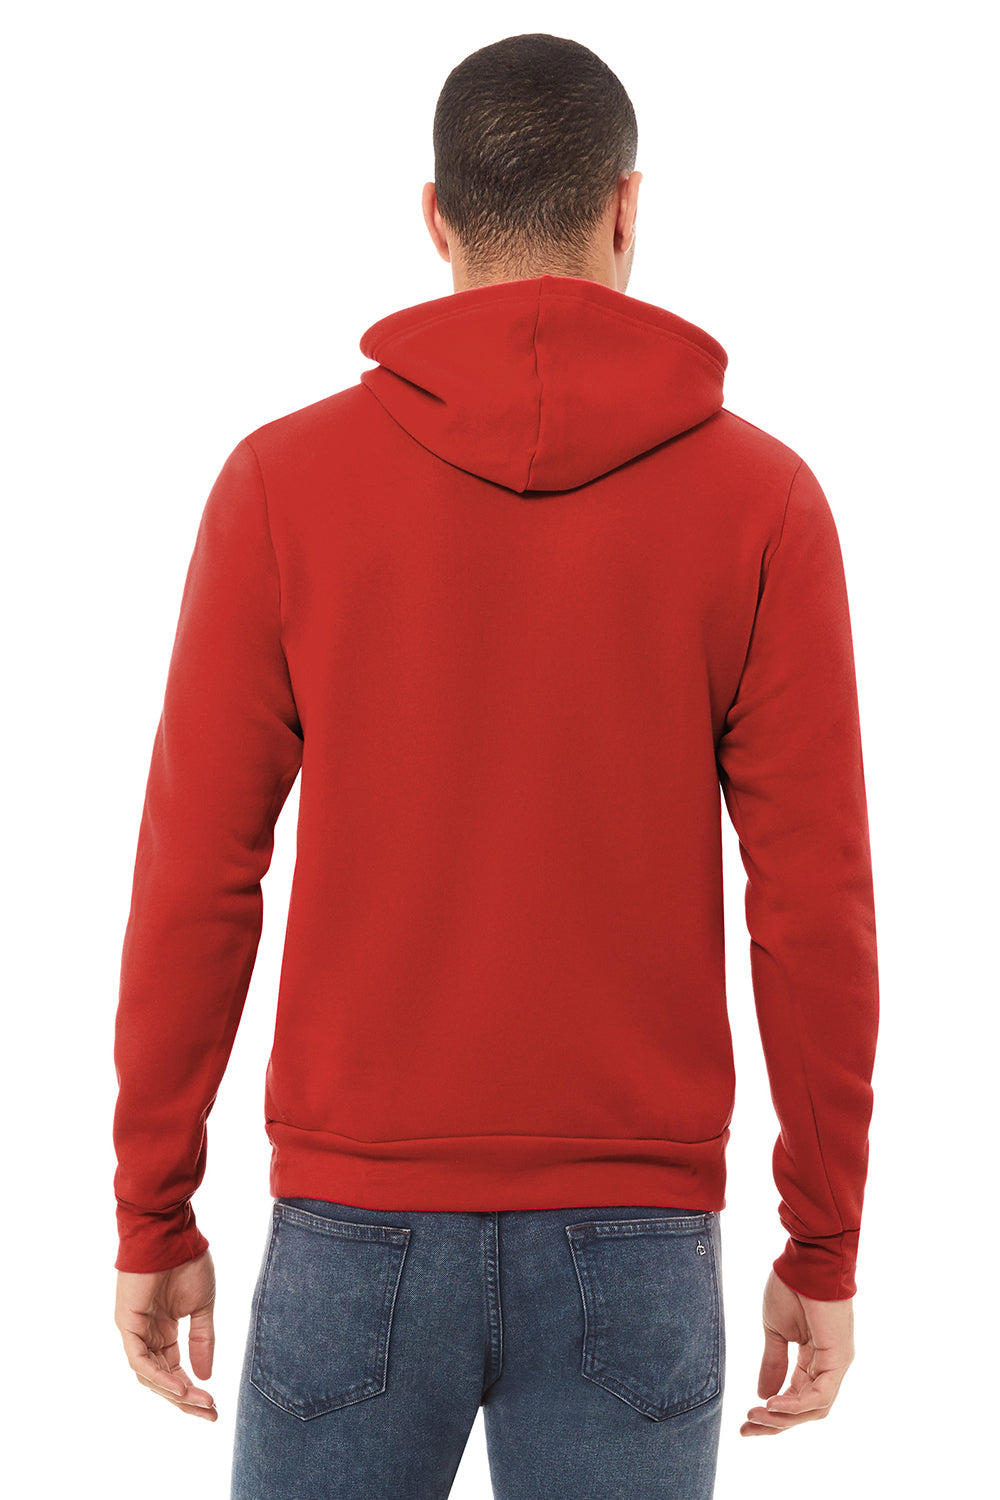 Bella + Canvas BC3719/3719 Mens Sponge Fleece Hooded Sweatshirt Hoodie Red Model Back